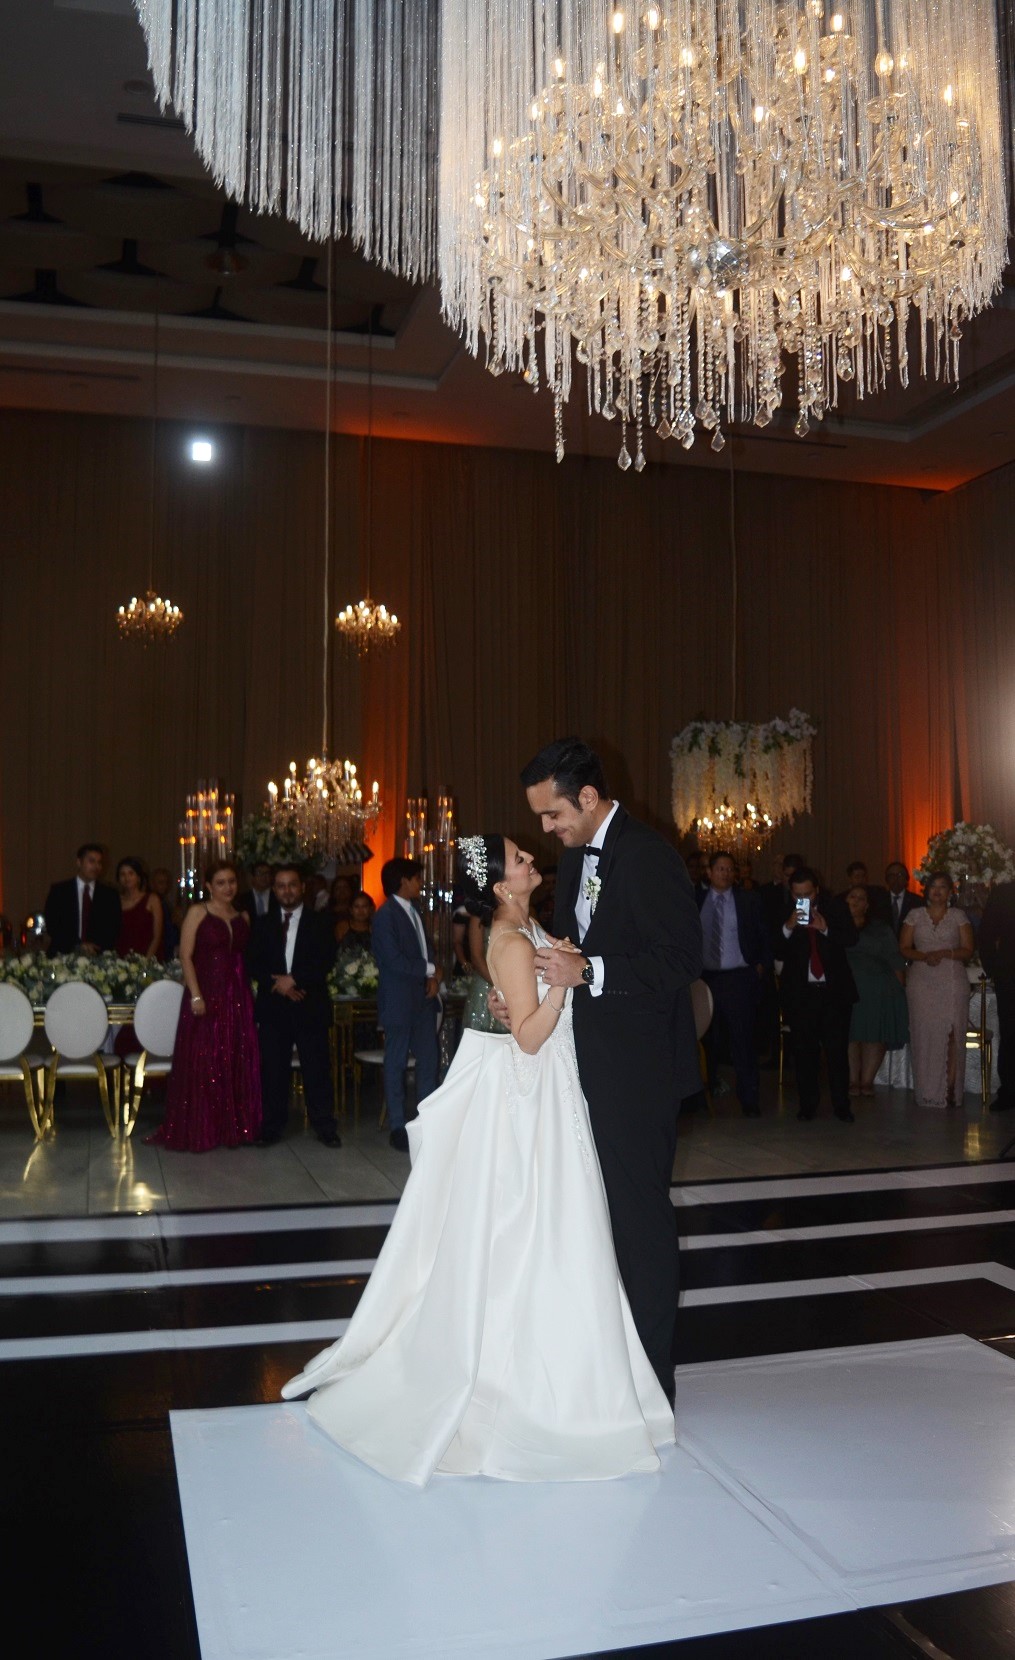 La romántica boda de Guillermo Flores y Laura Sofía Espinal